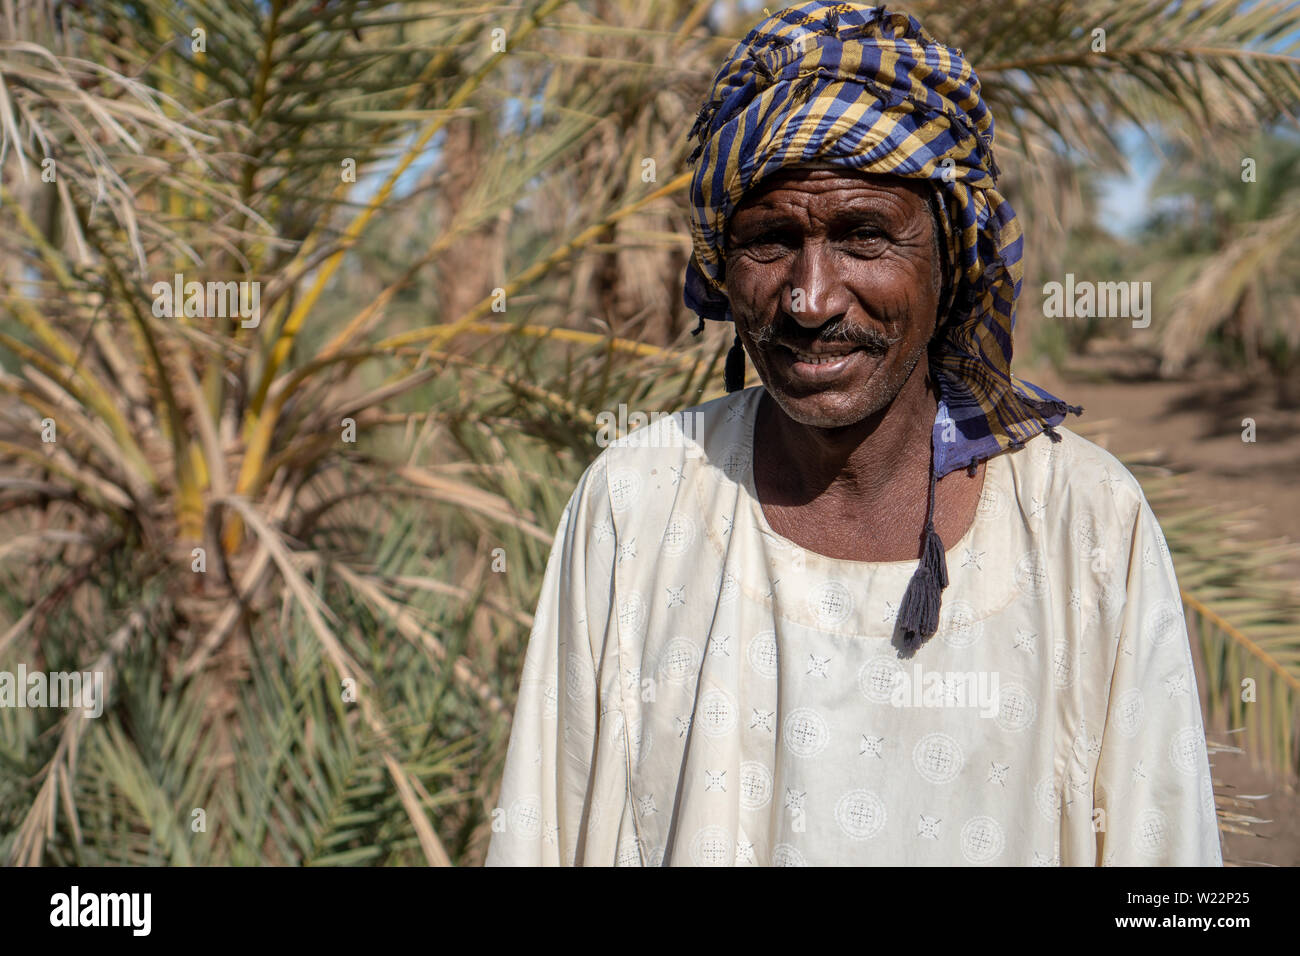 Portrait d'un agriculteur nubien portant des vêtements traditionnels dans le nord du Soudan, Nov 2018 Banque D'Images